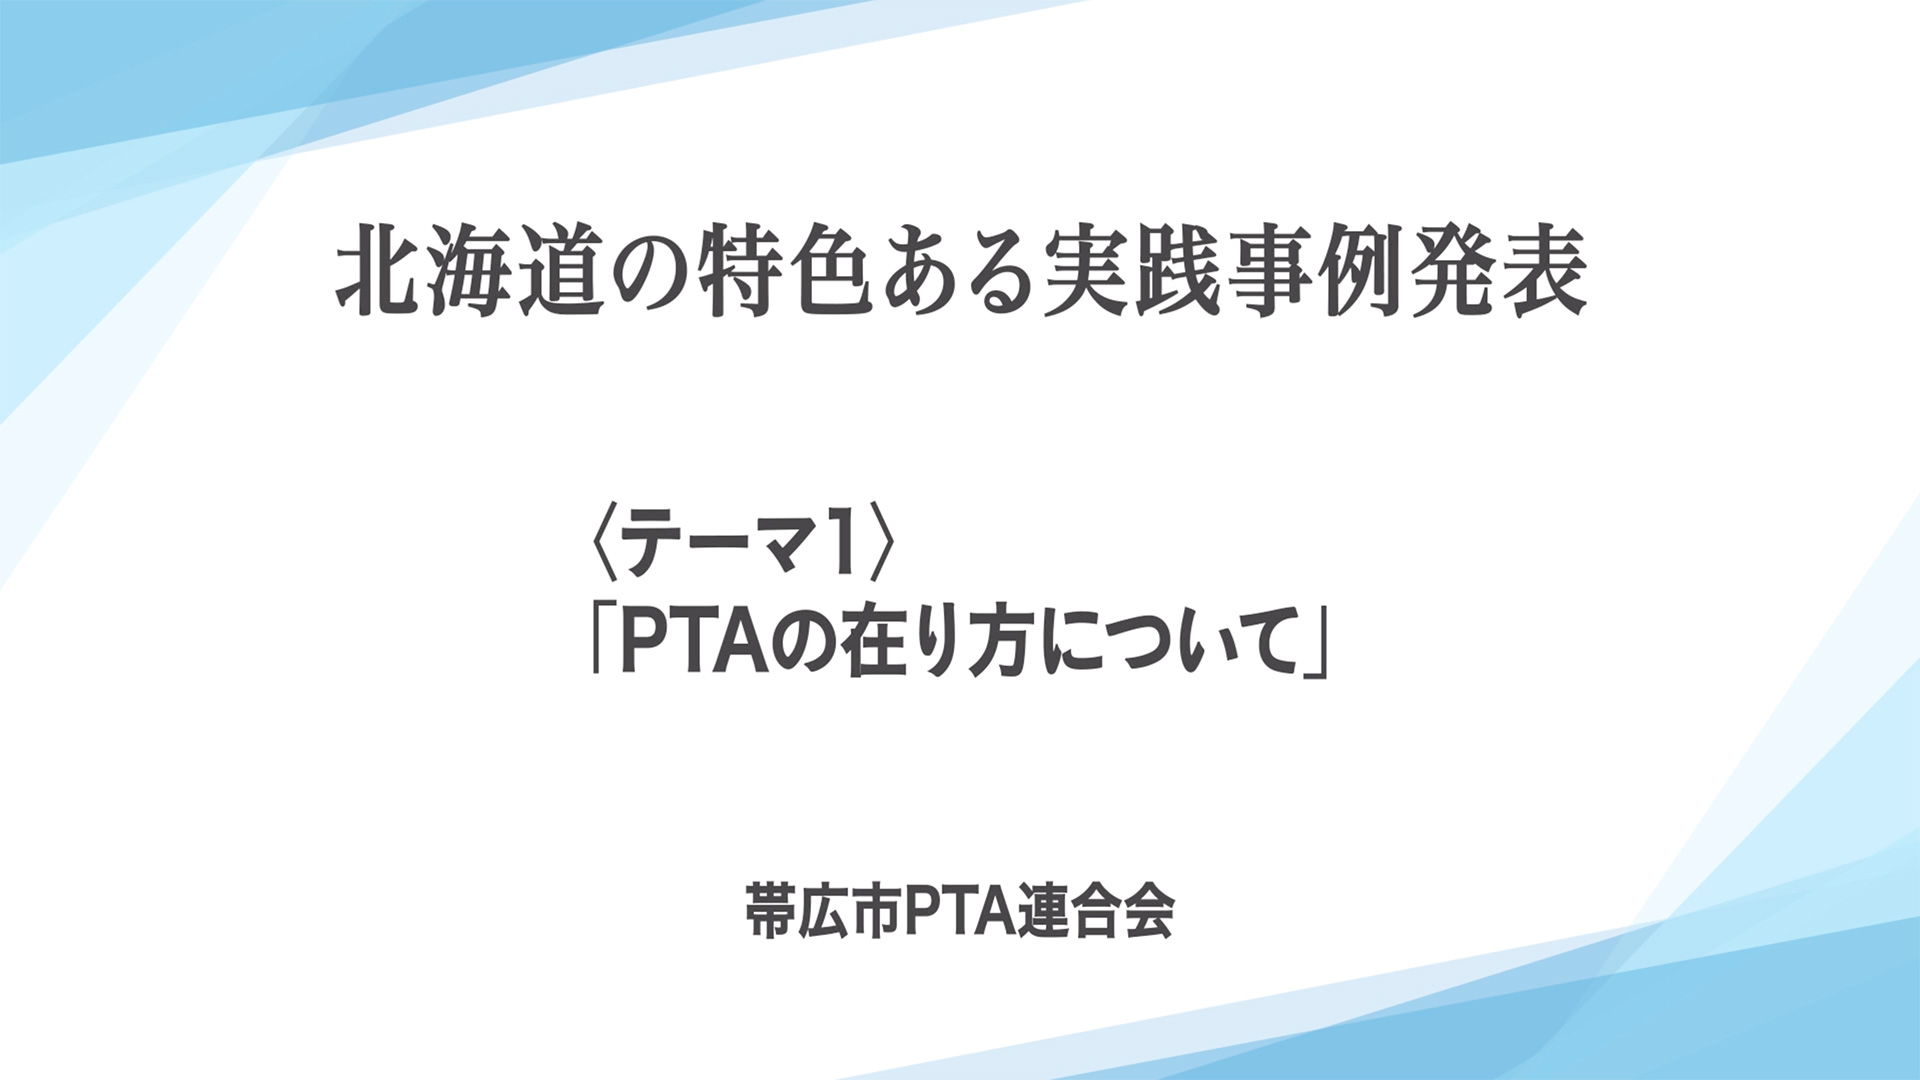 北海道PTA連合会 様画像